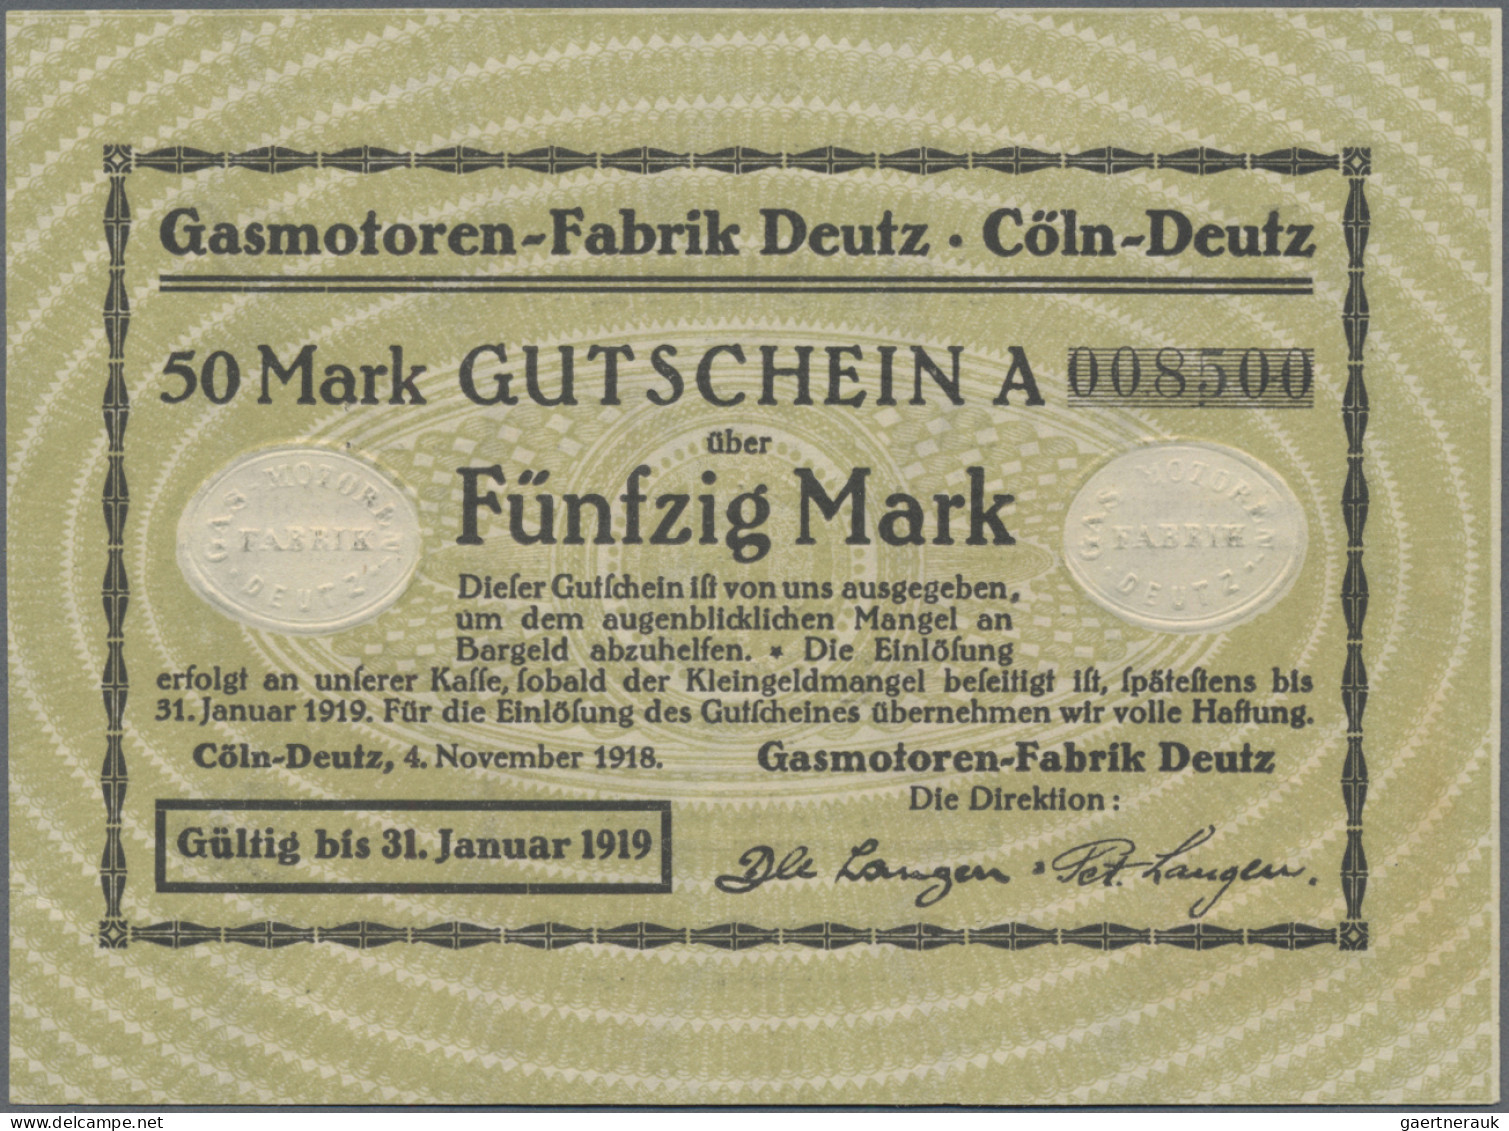 Deutschland - Notgeld - Rheinland: Köln-Deutz, Gasmotoren-Fabrik Deutz, 5, 20, 5 - [11] Local Banknote Issues